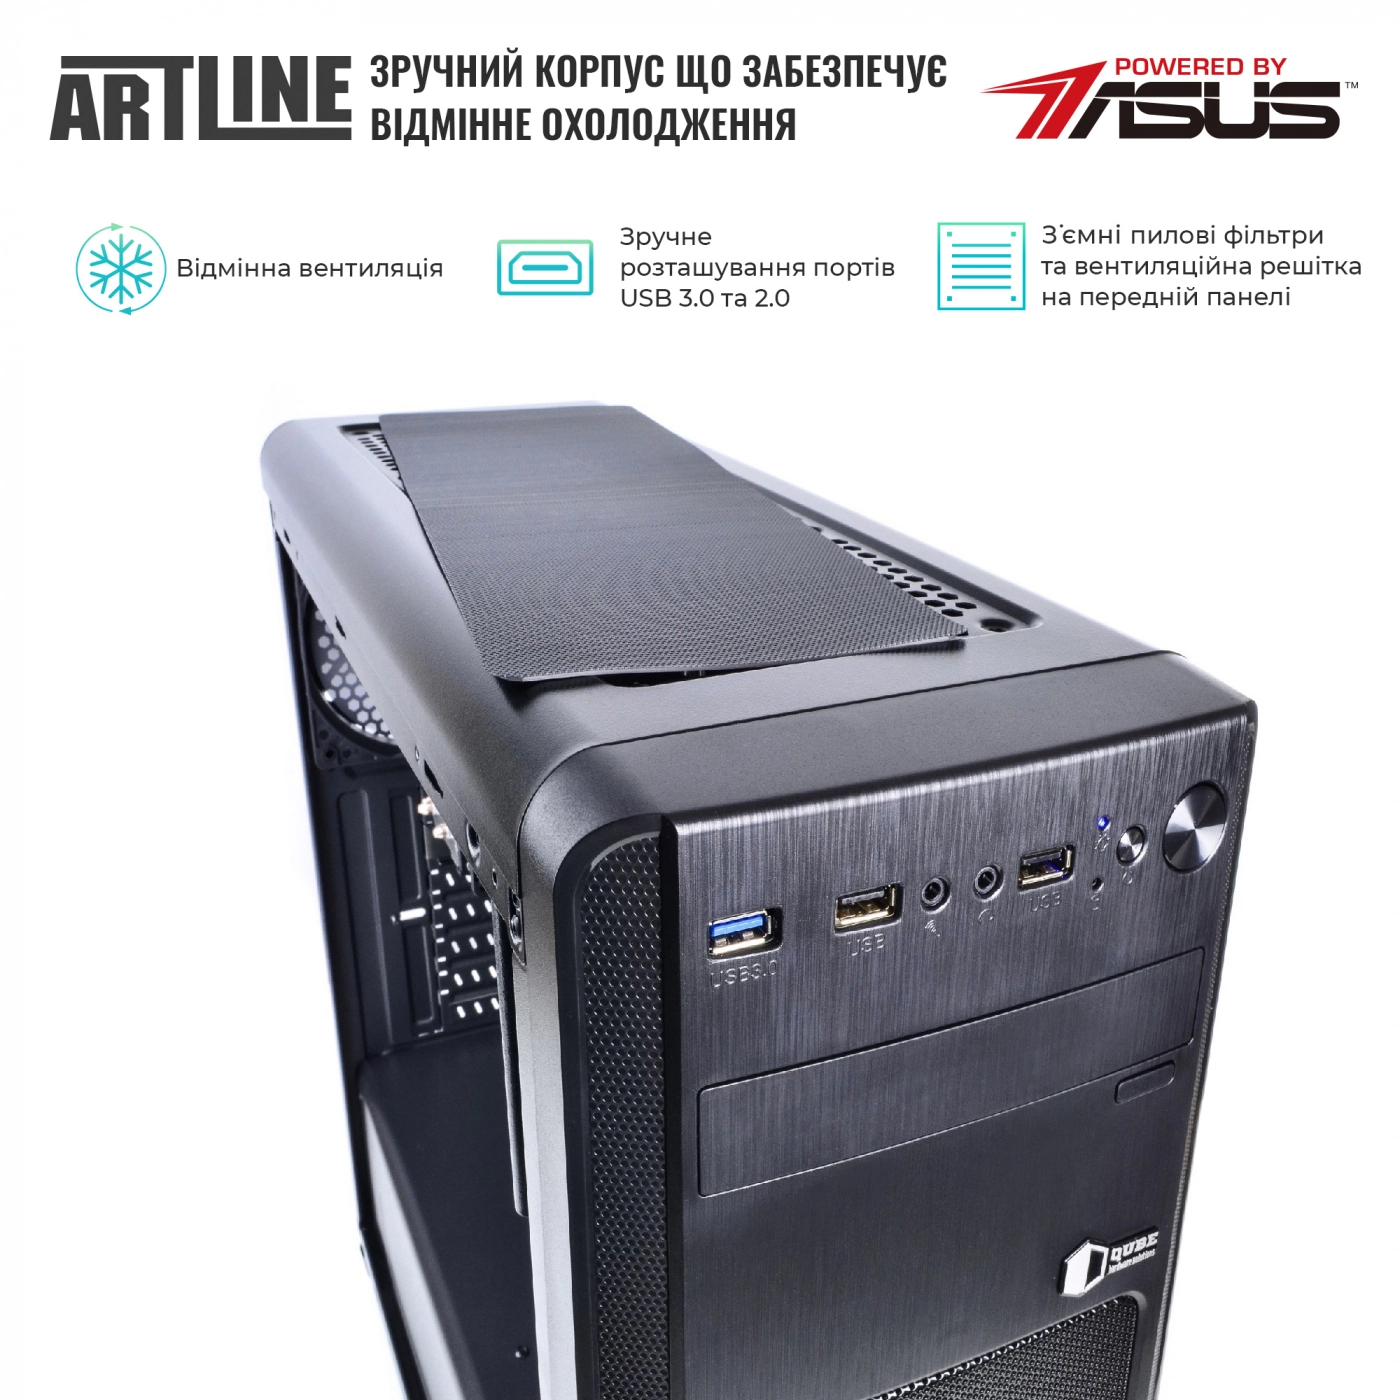 Купить Сервер ARTLINE Business T15v18 - фото 2